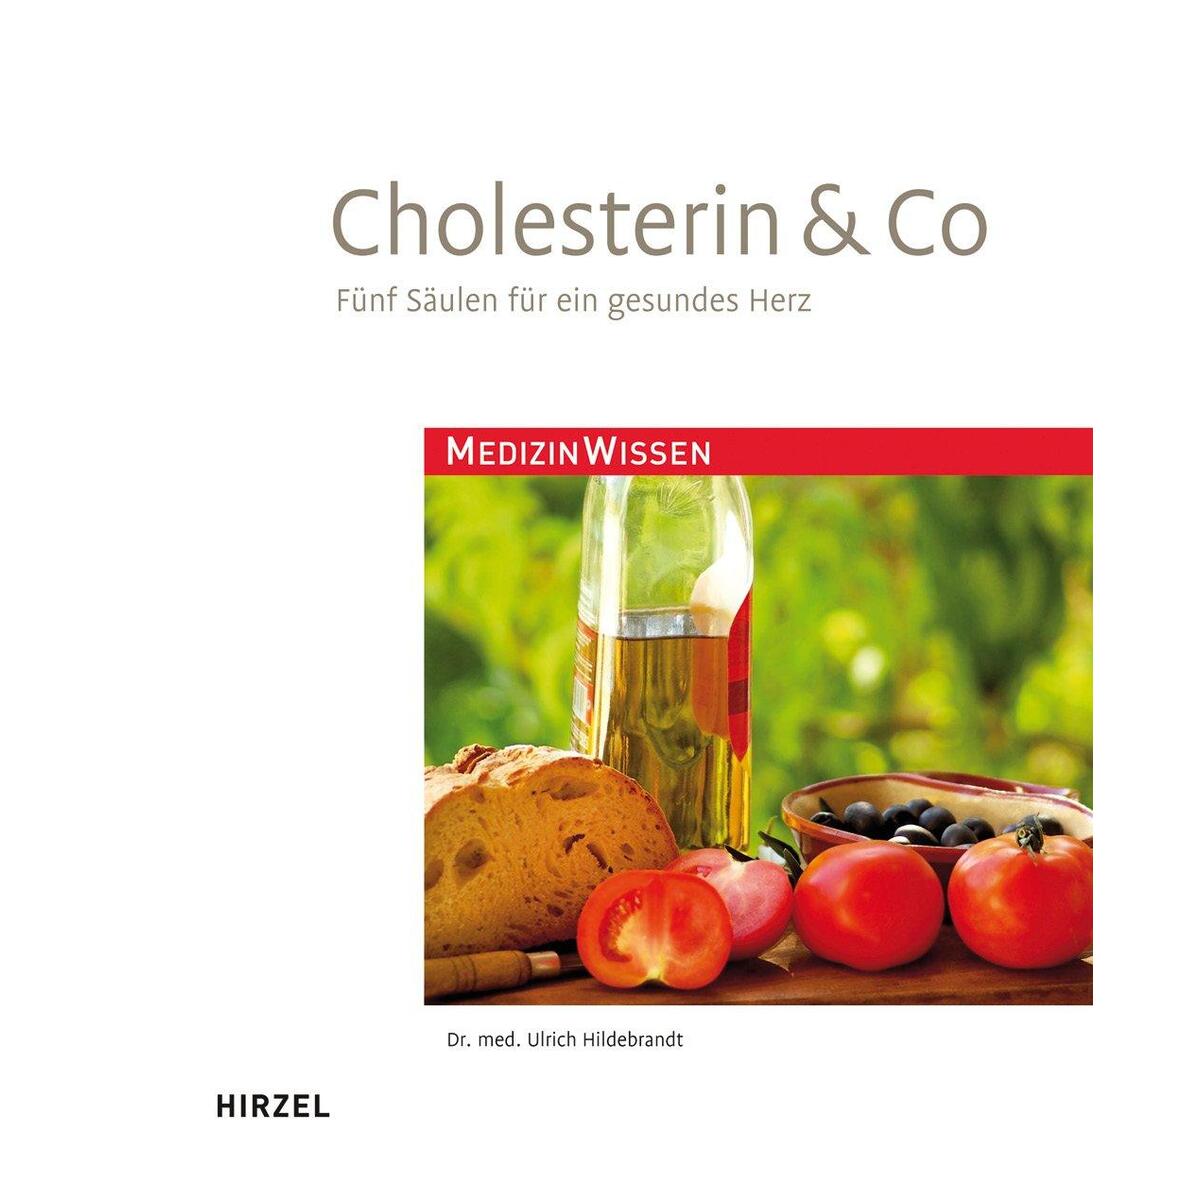 Cholesterin & Co von Hirzel S. Verlag